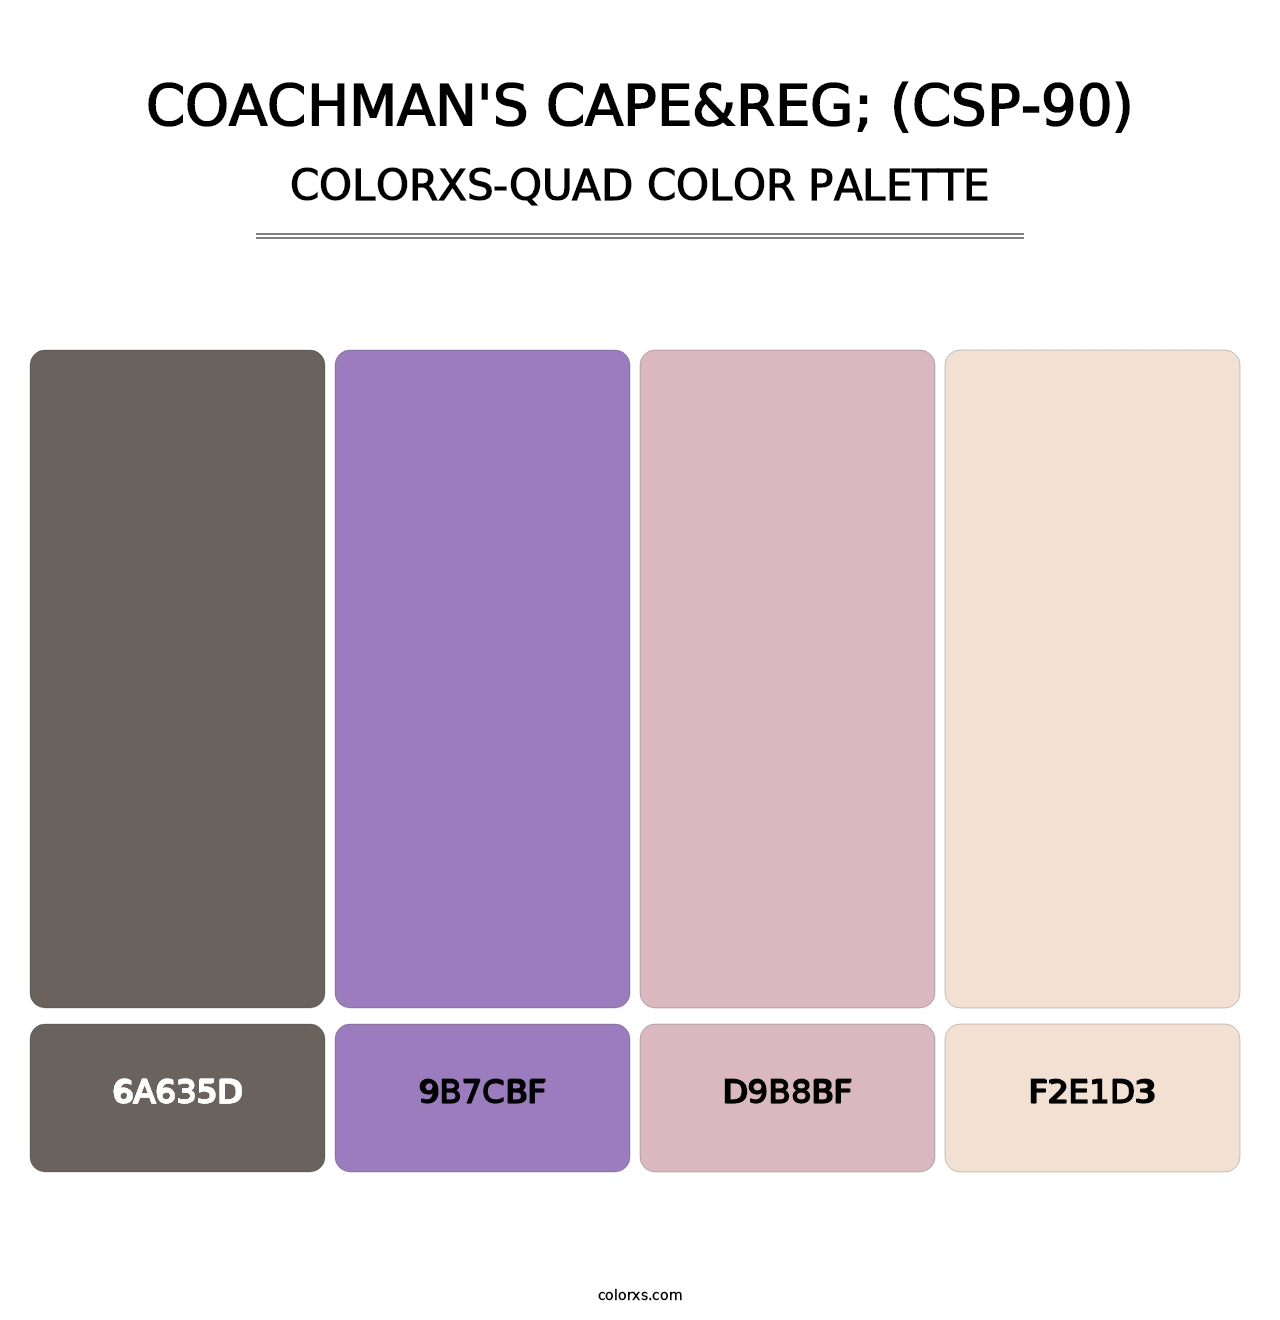 Coachman's Cape&reg; (CSP-90) - Colorxs Quad Palette